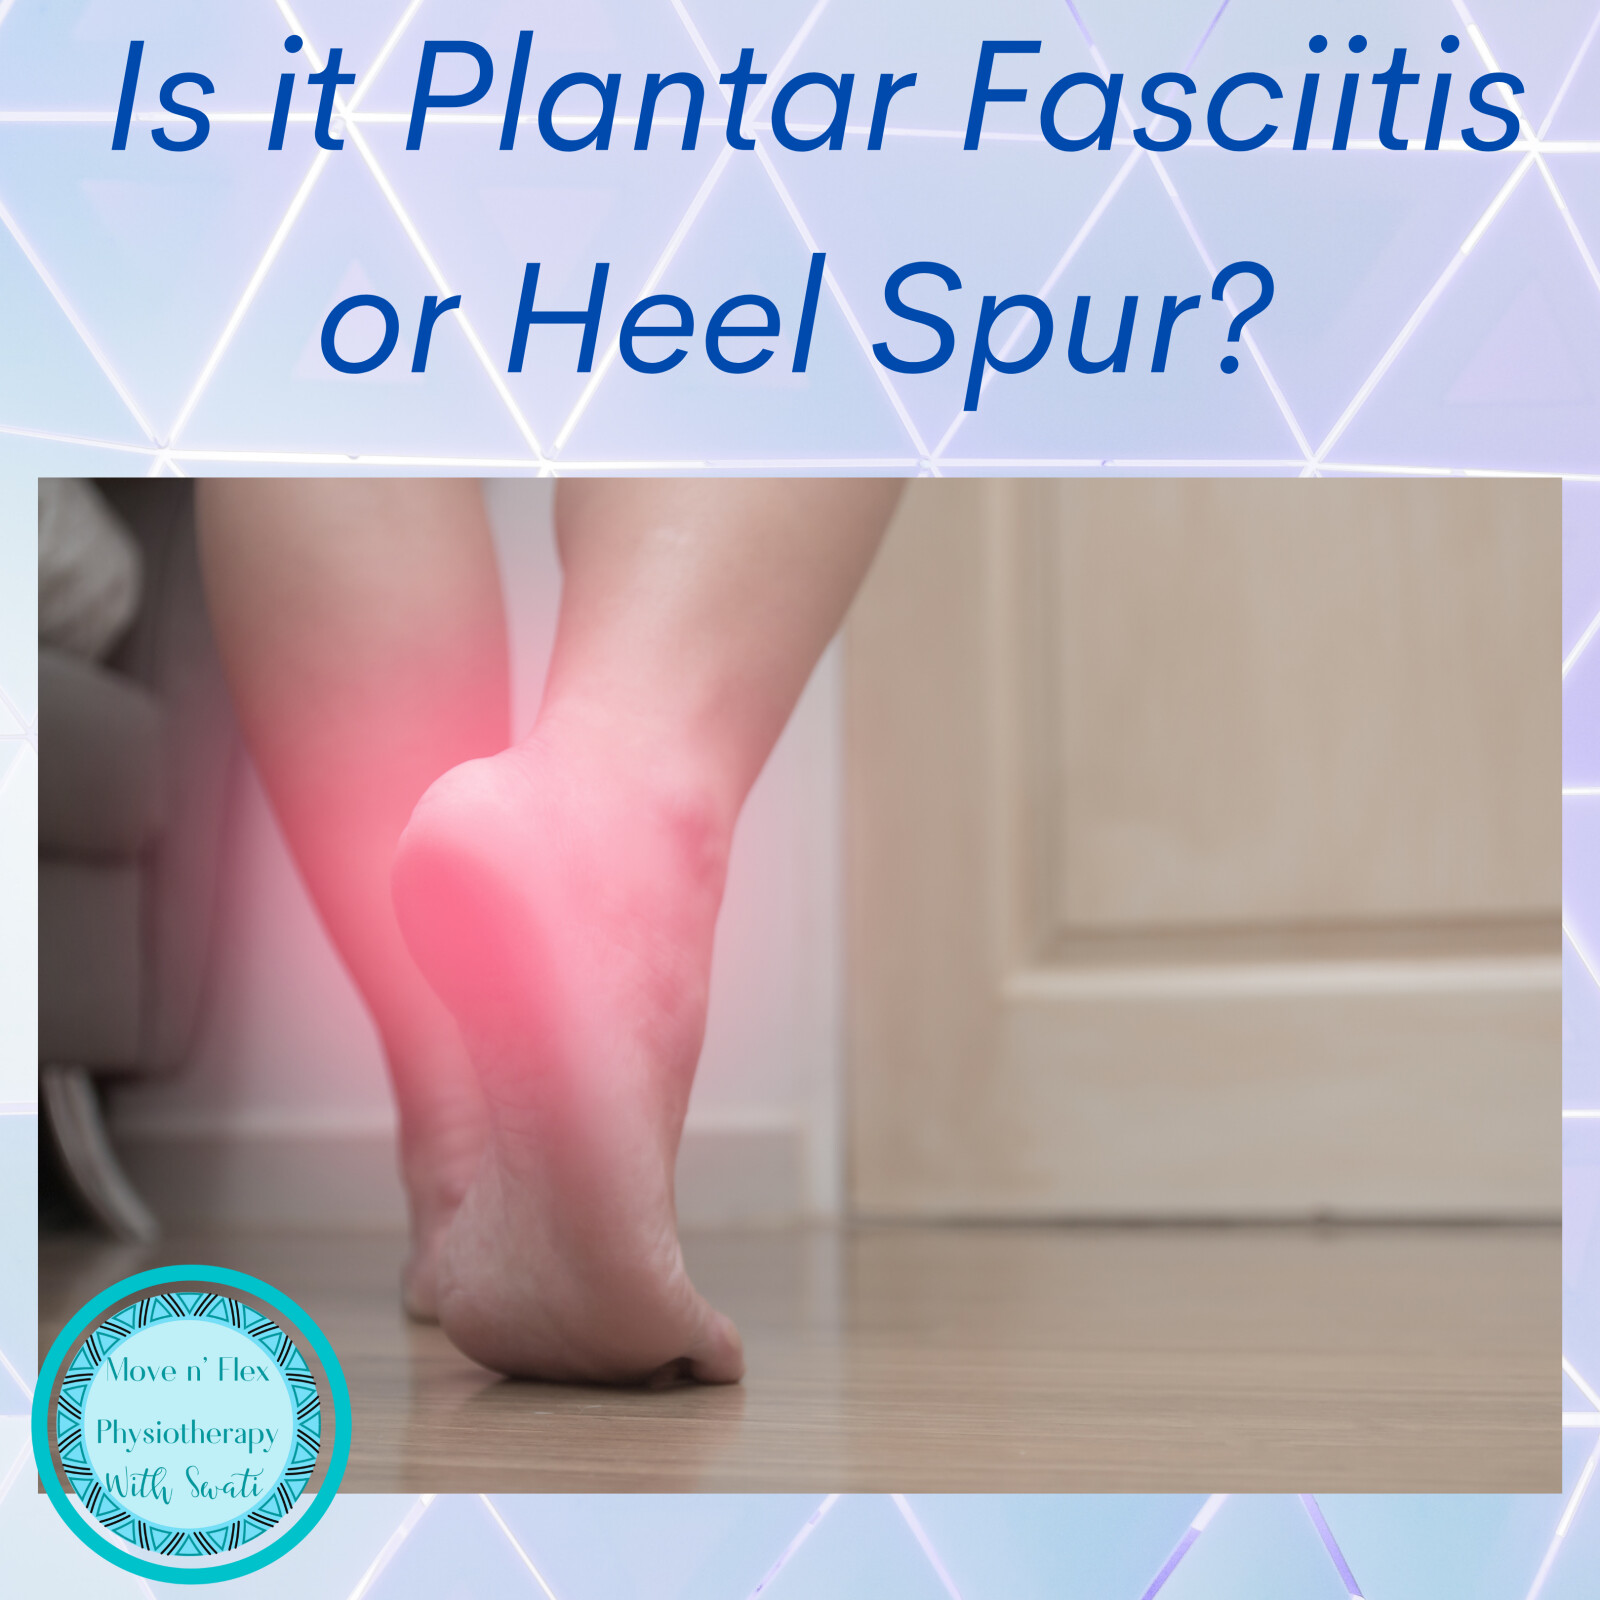 Pain in the foot - Is it Plantar fasciitis or heel spur?